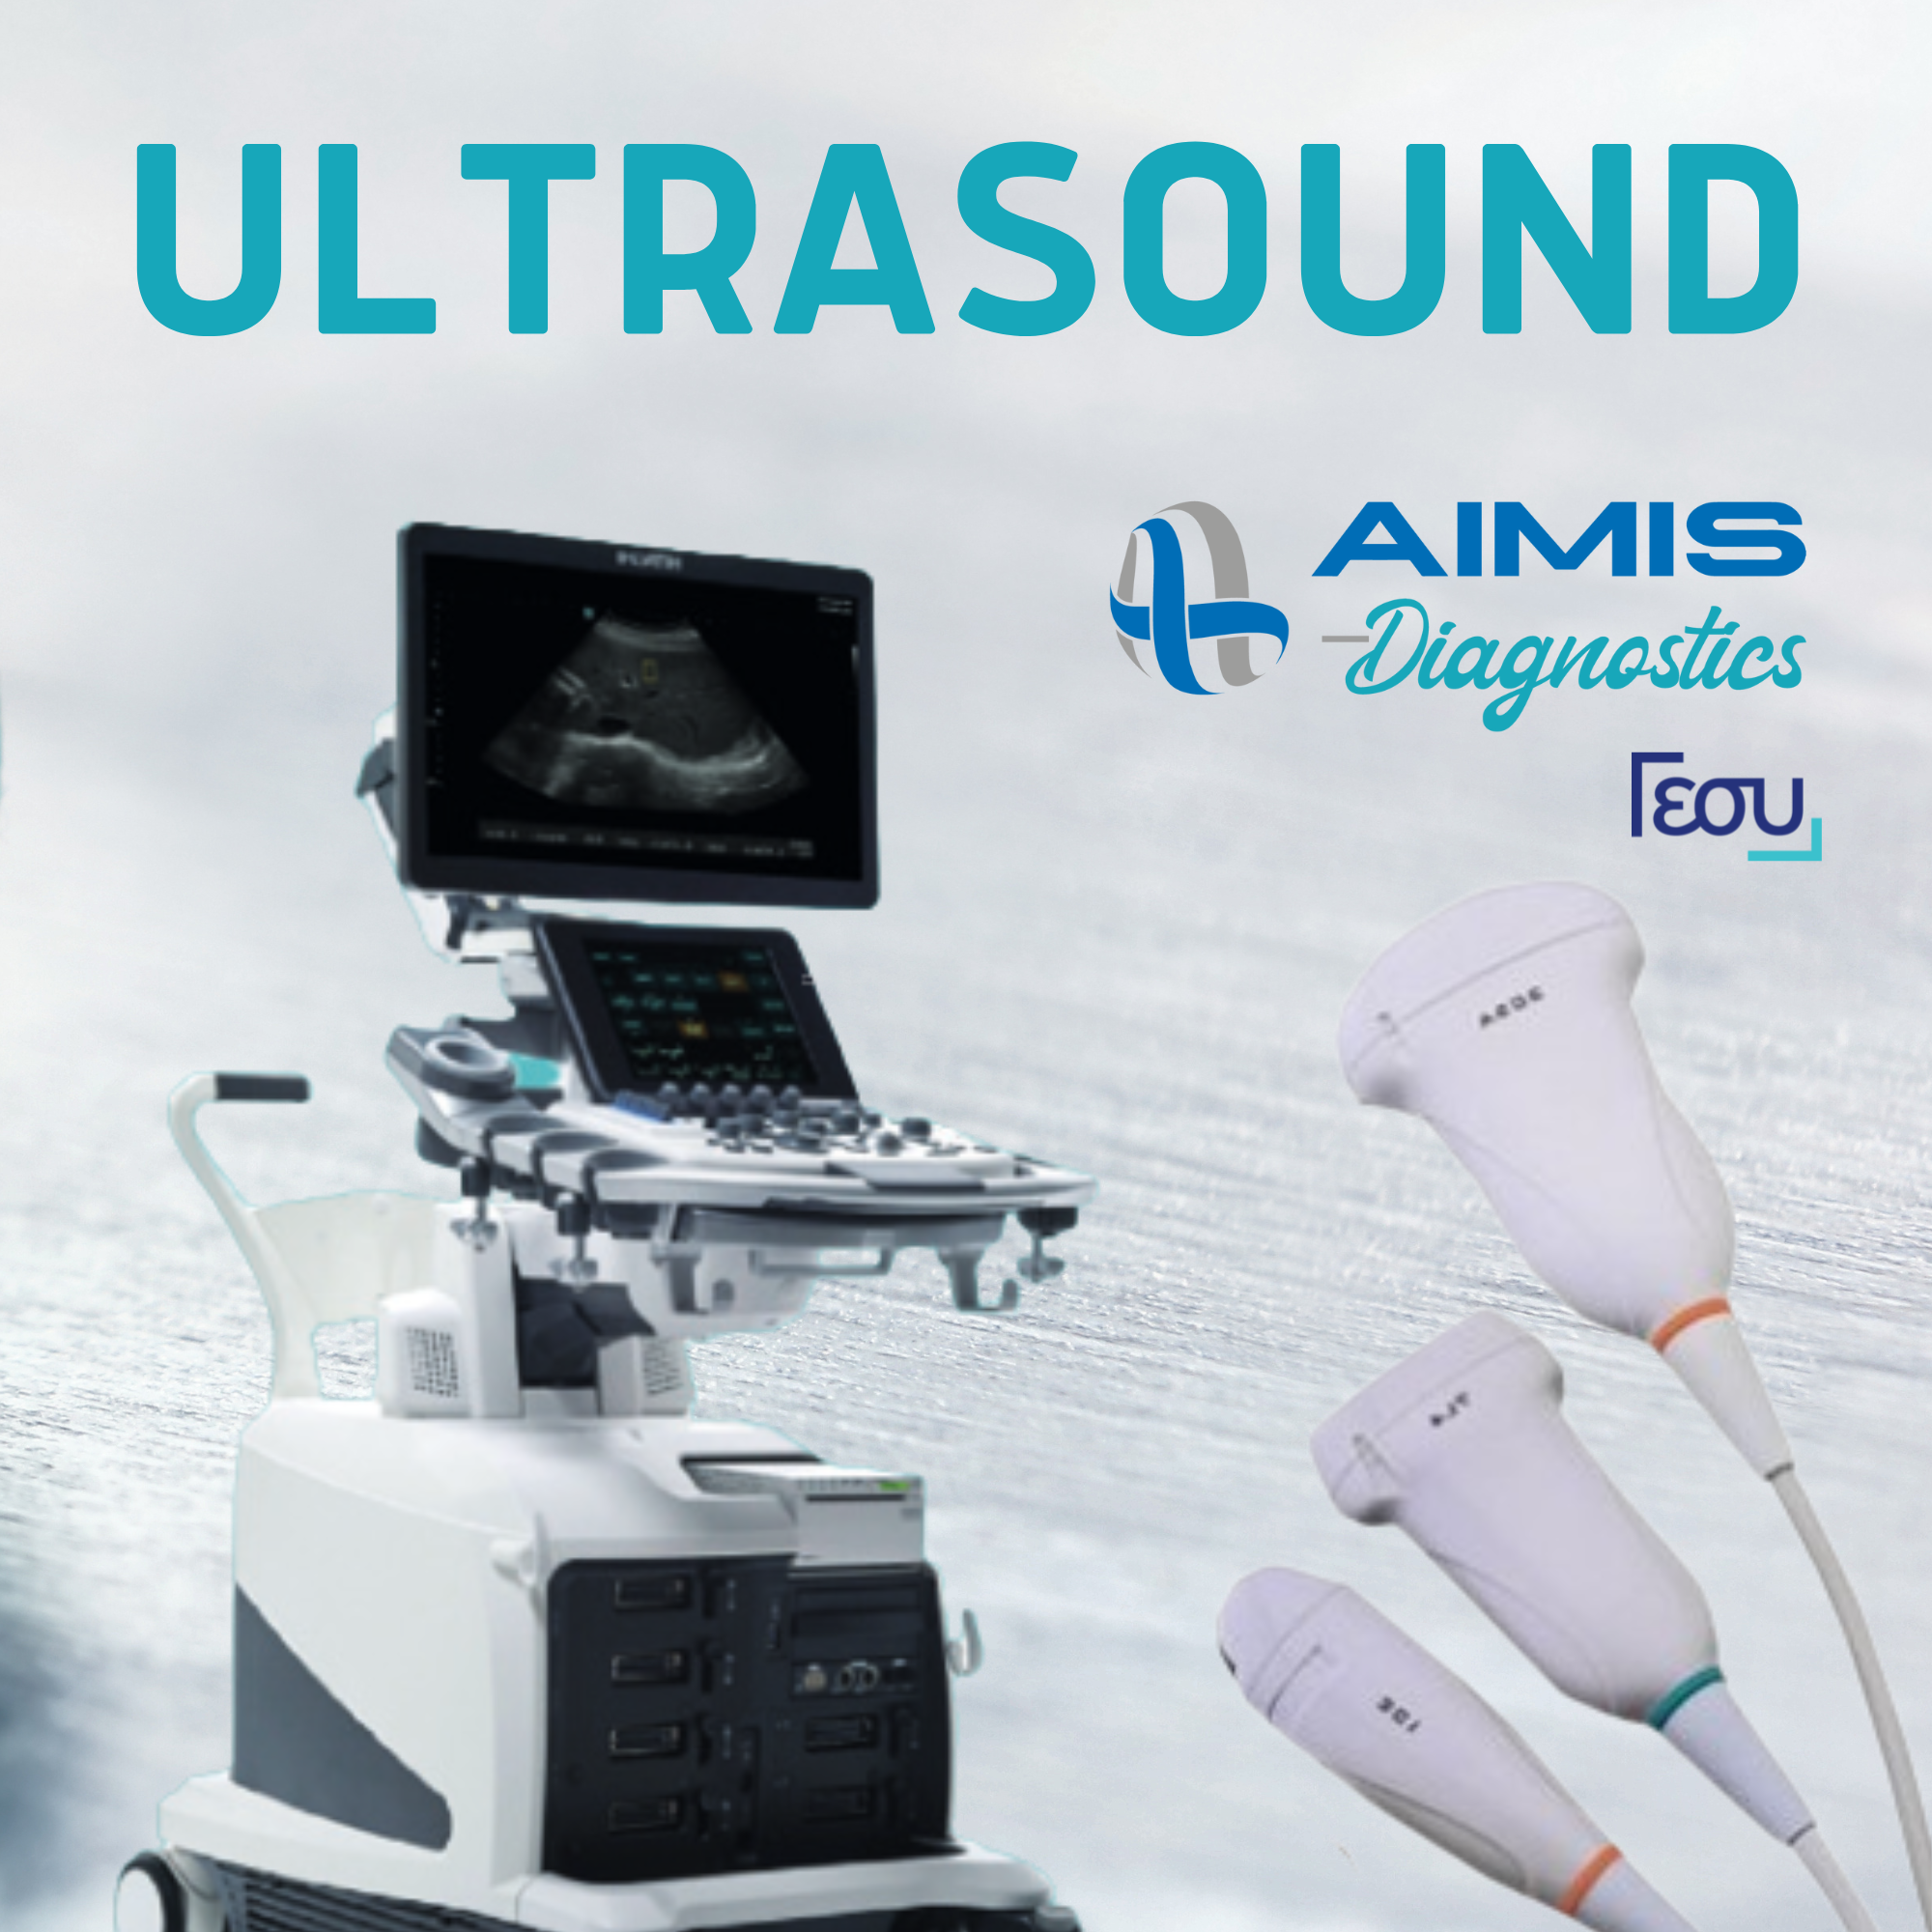 Ultrasound at AIMIS Diagnostics